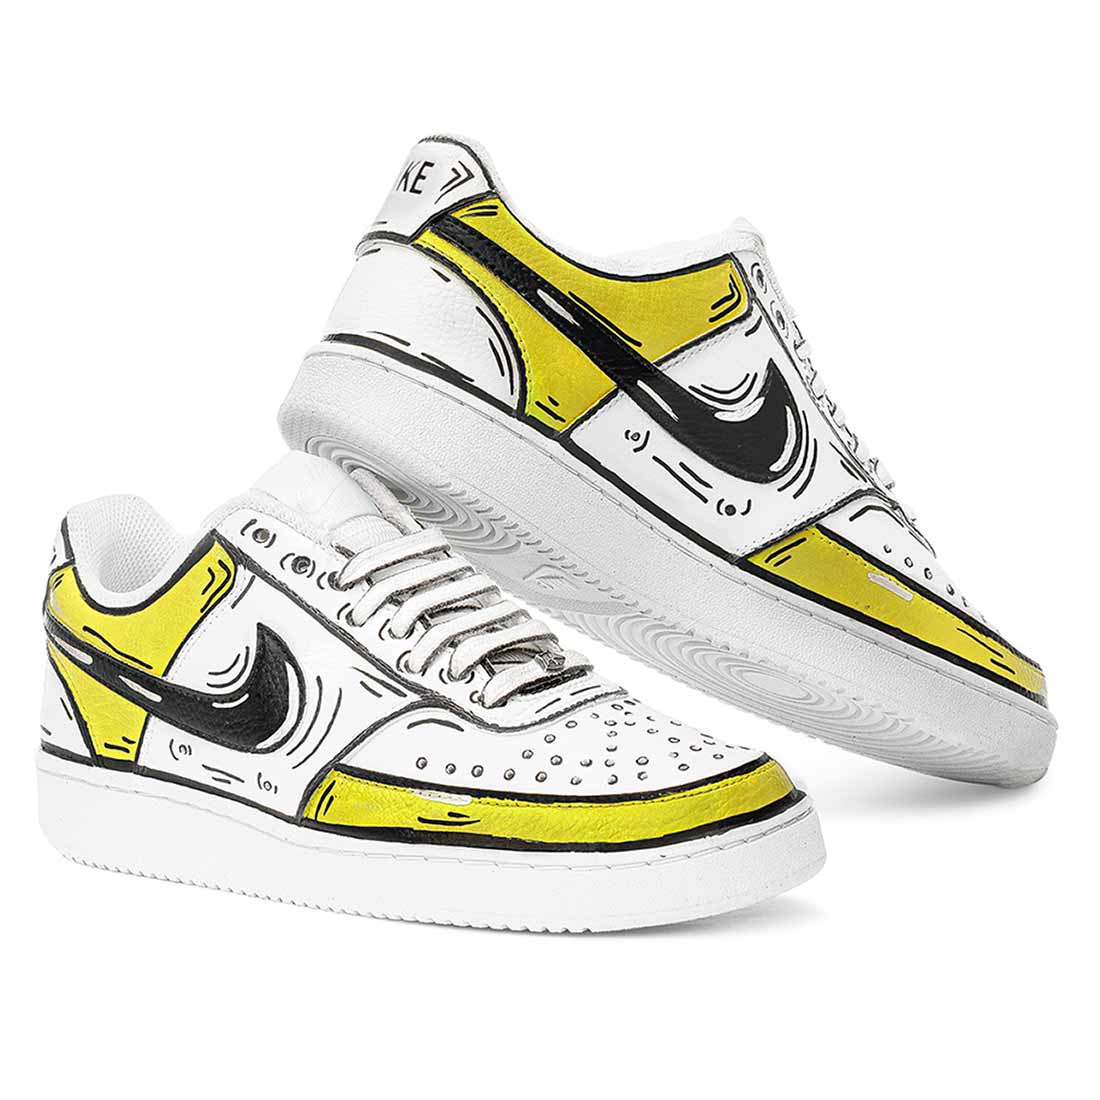 Nike court vision effetto fumetto disegnate a mano colore giallo bianco e nero